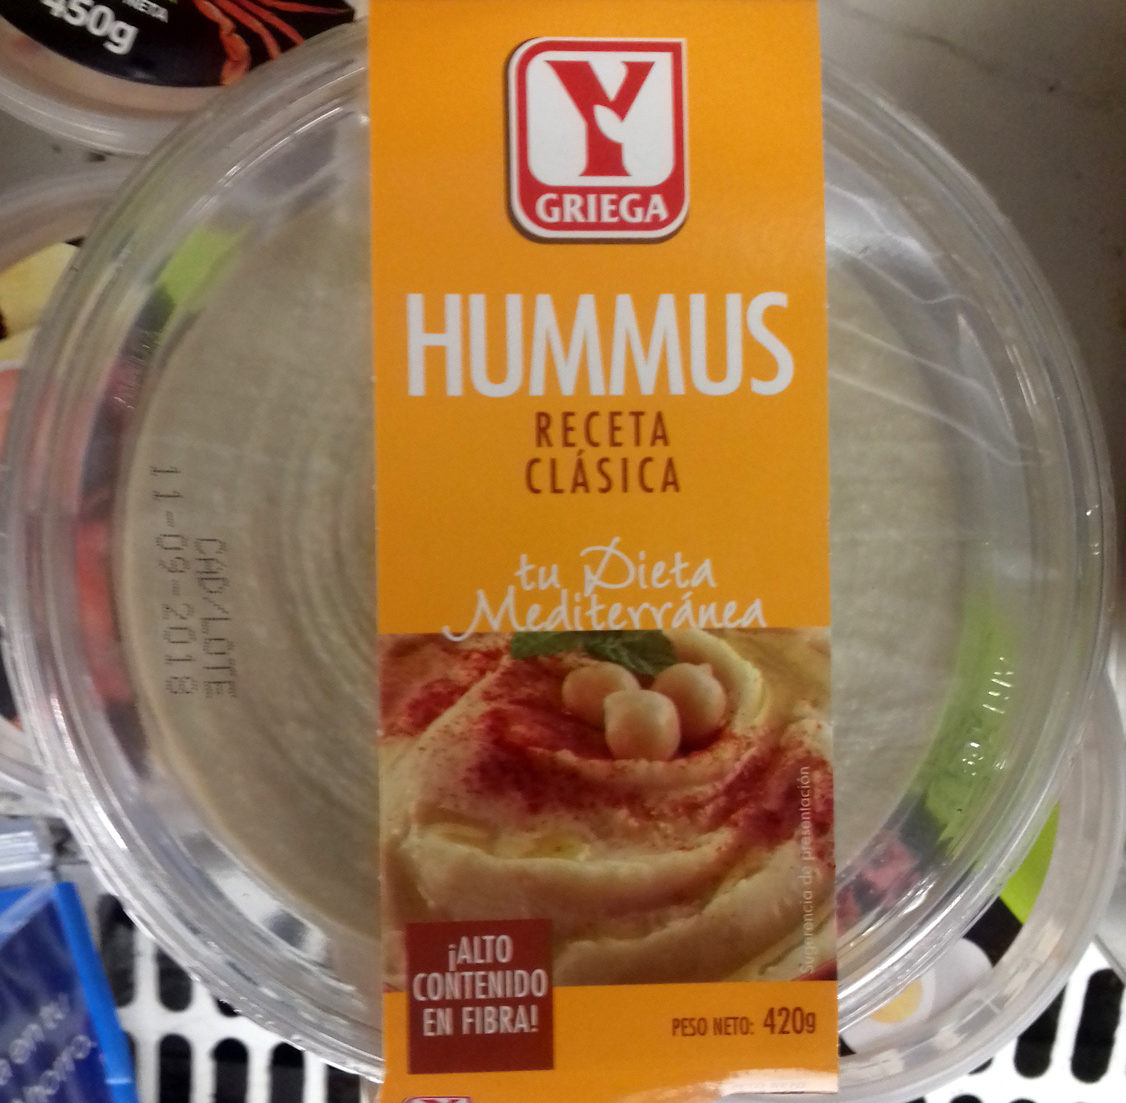 Hummus receta clásica - Product - es